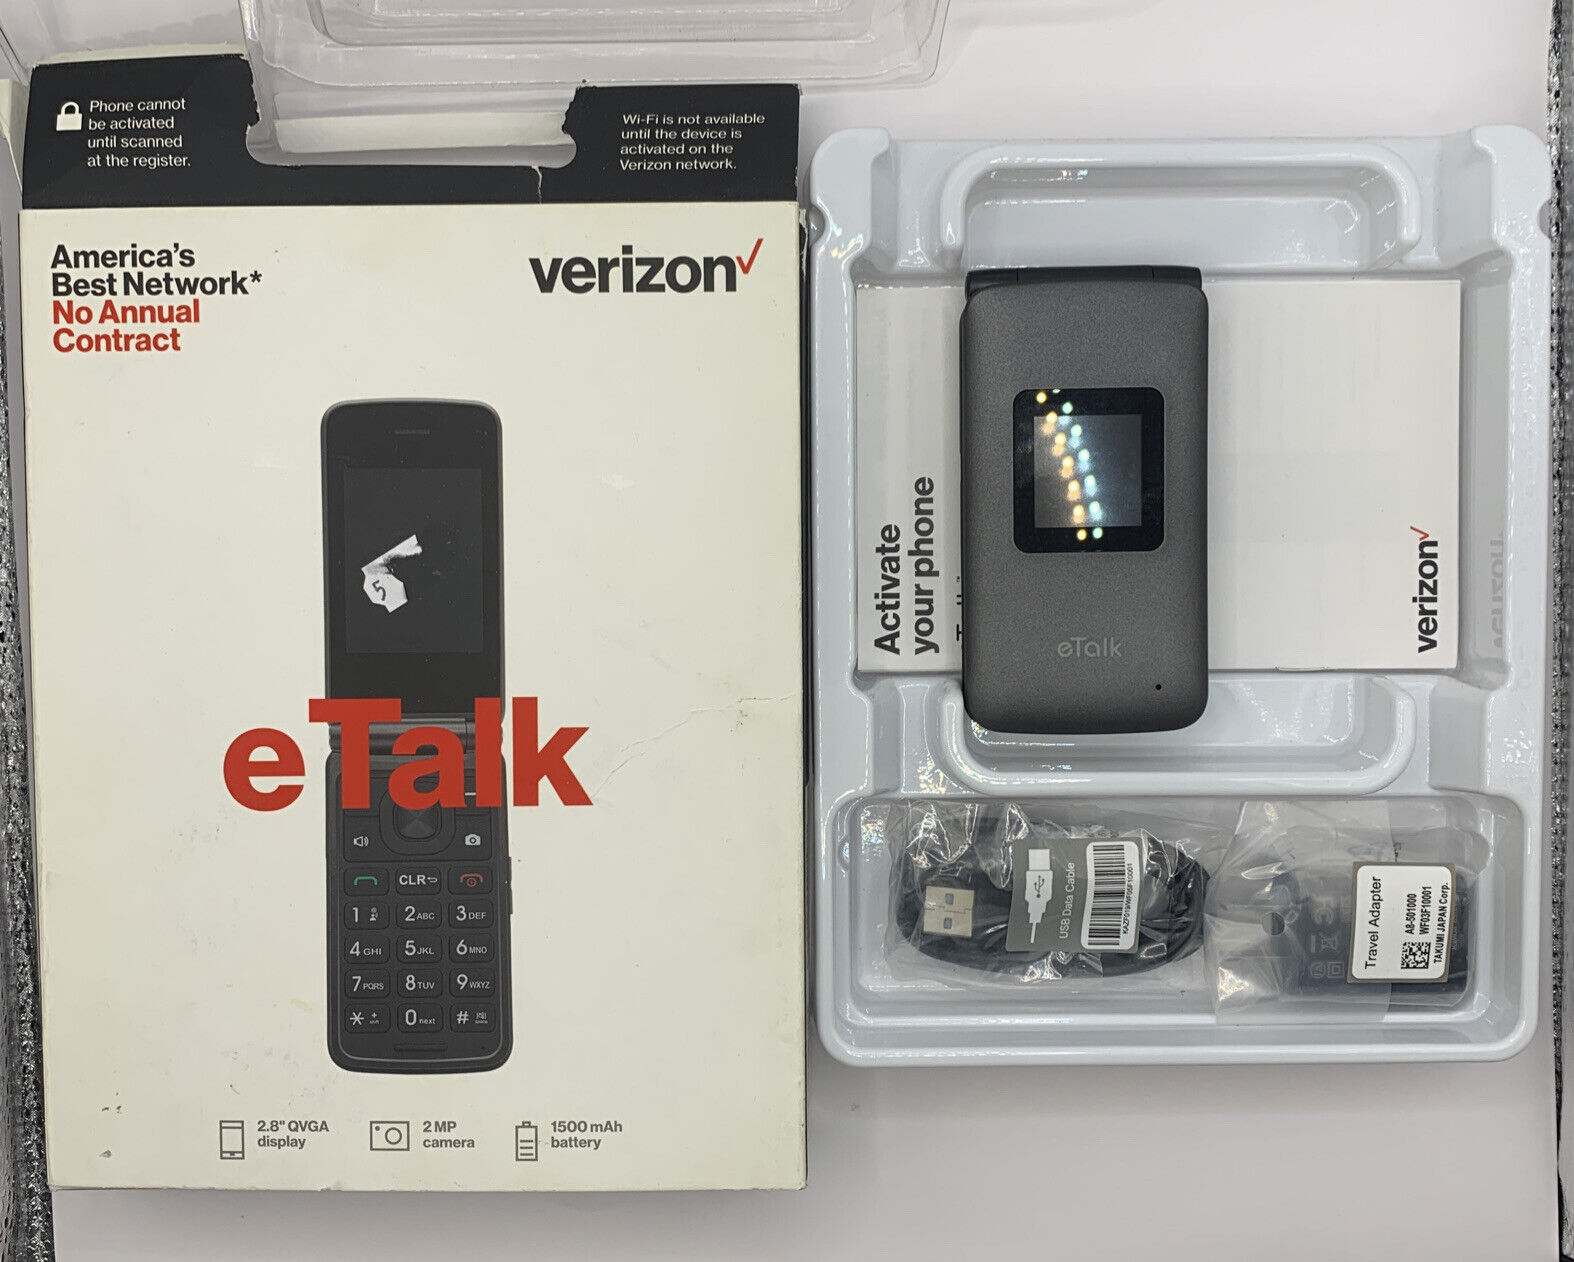 how-to-use-verizon-etalk-phone